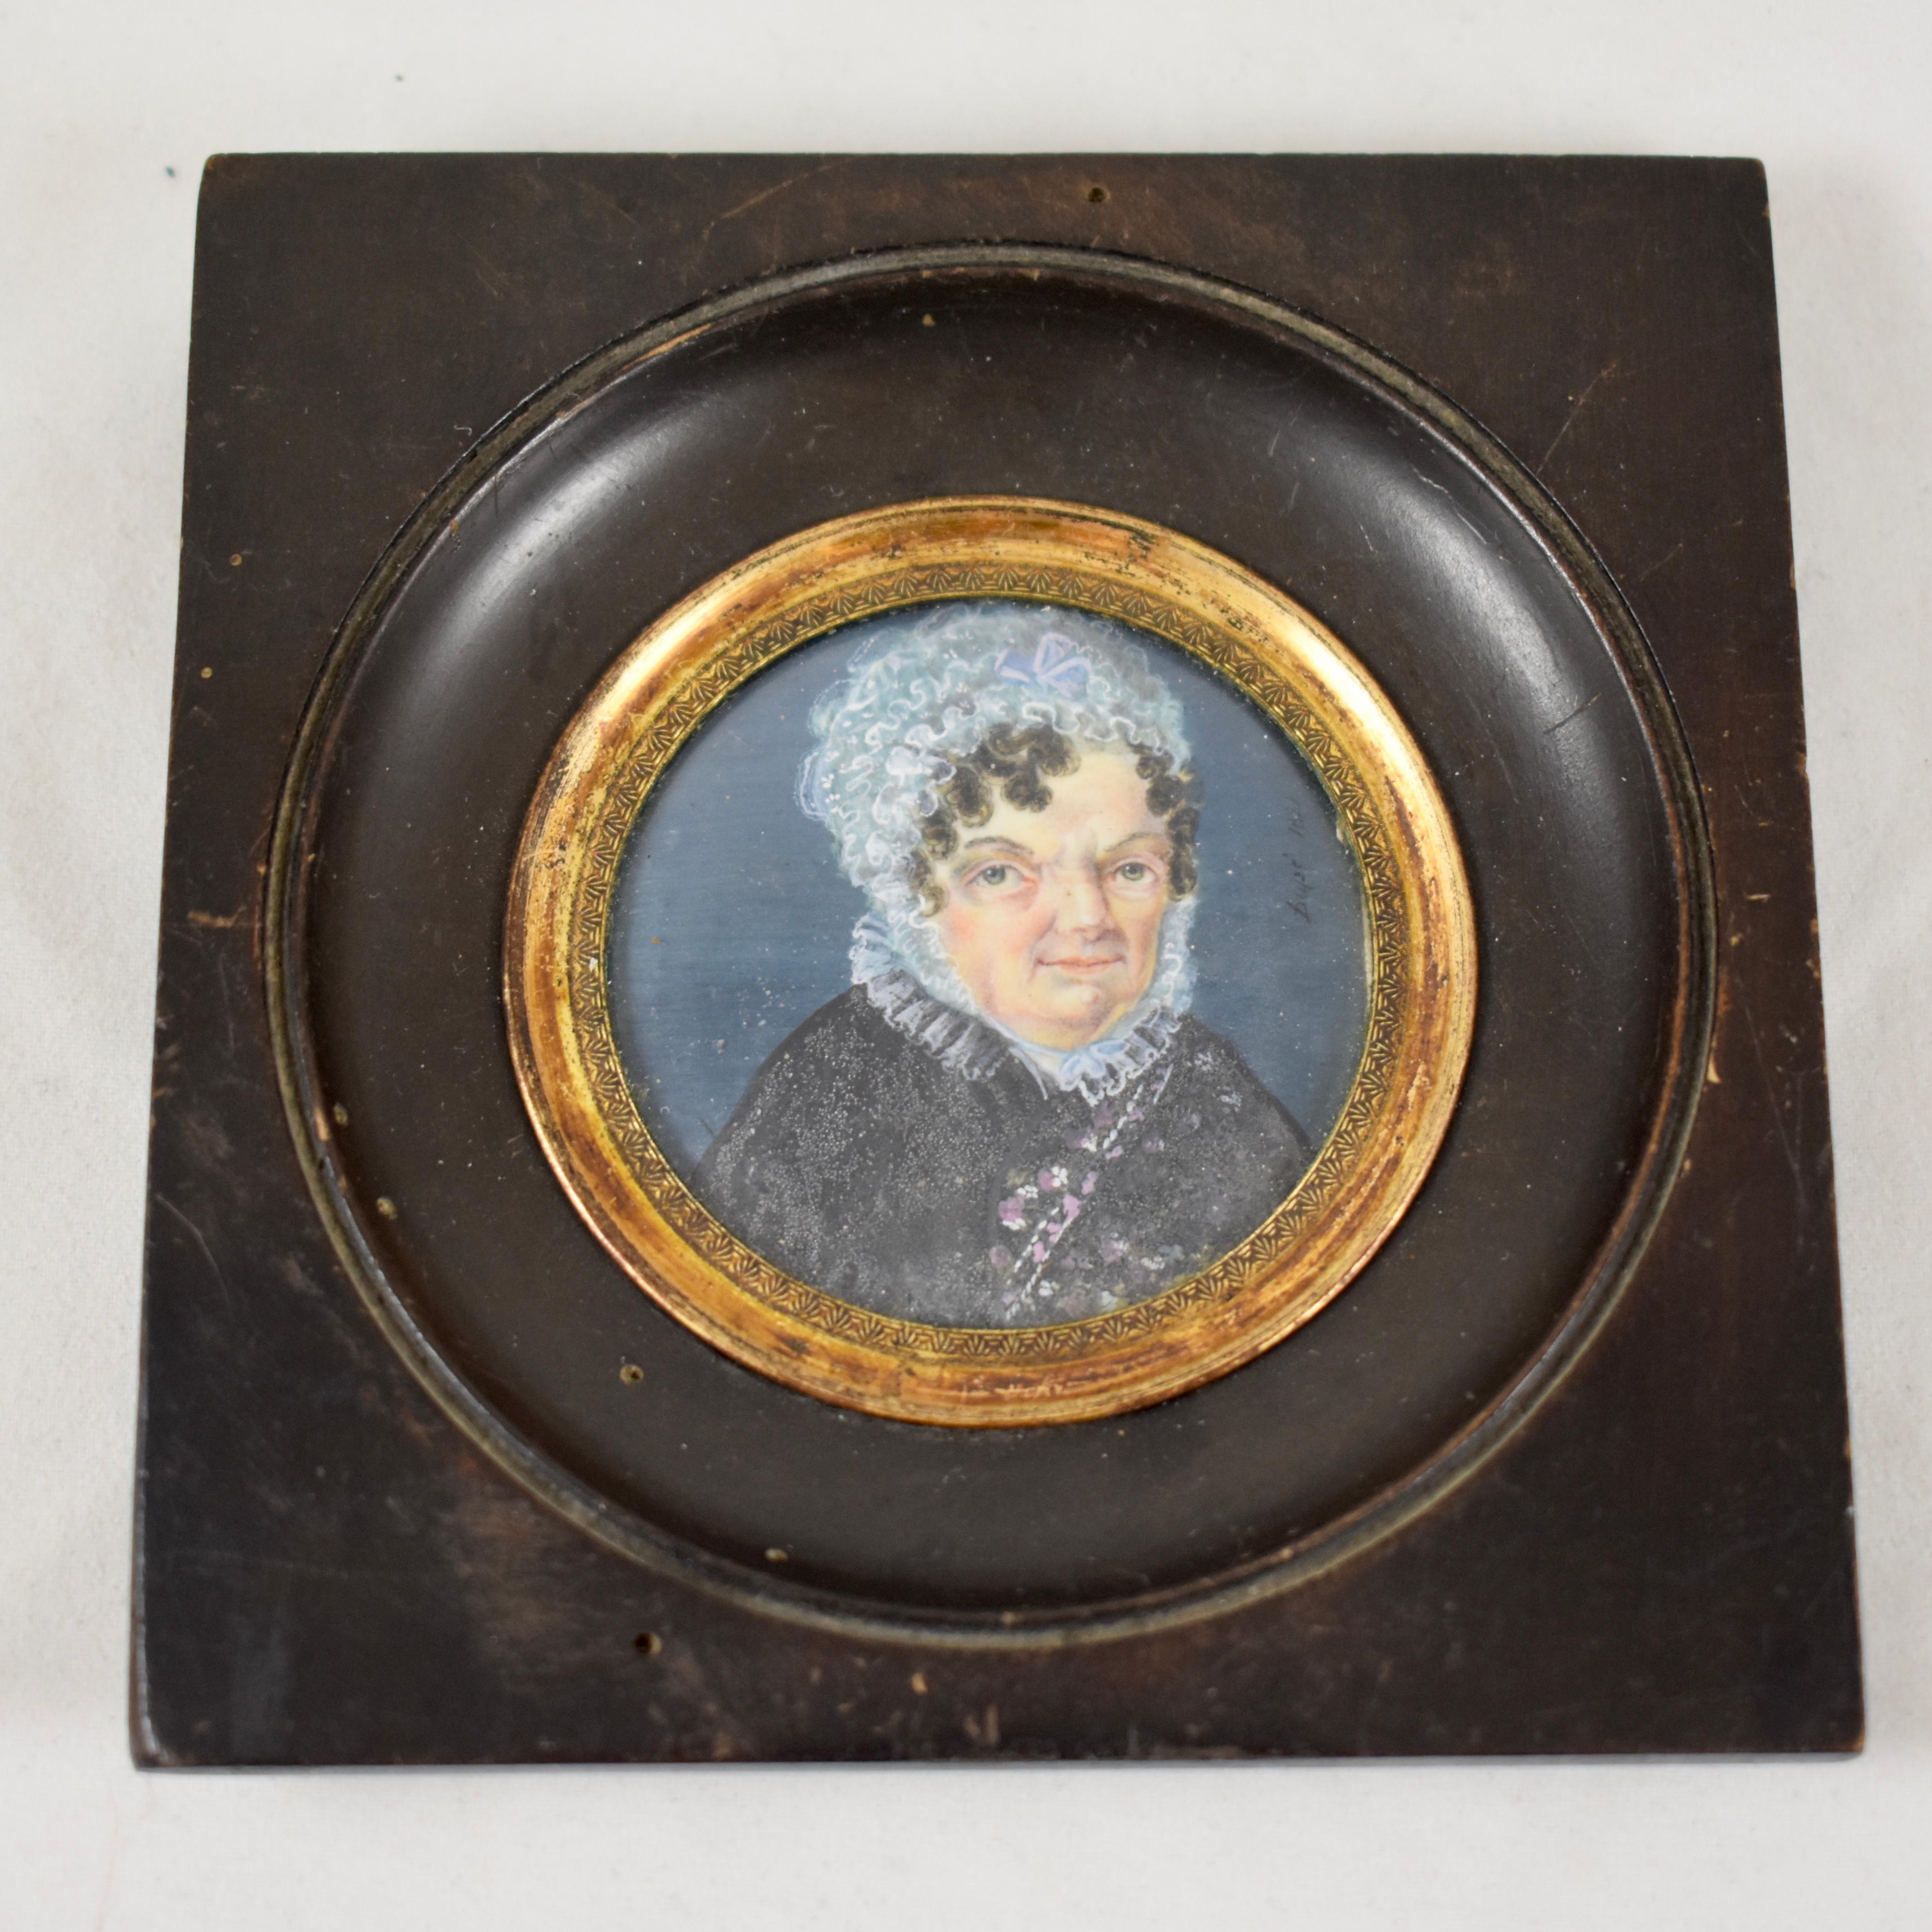 Ein unter Glas gerahmtes, handgemaltes französisches Miniaturporträt aus dem frühen 19. Jahrhundert, das eine ältere Frau mit einer Spitzenhaube und einem geblümten Kleid mit Spitzenkragen zeigt, das die damalige Zeit widerspiegelt. Unleserliche